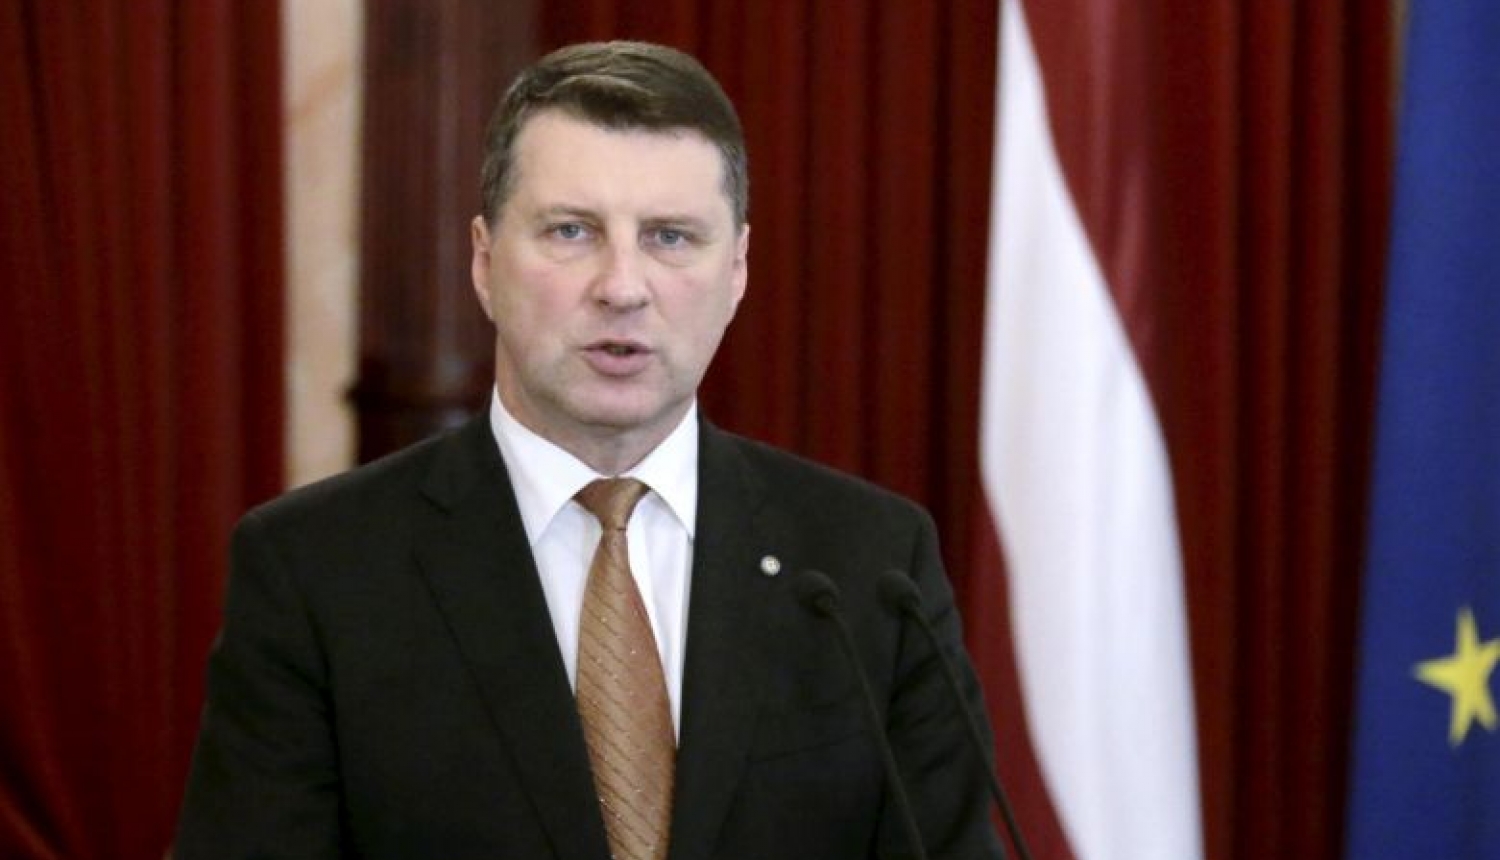 Valsts prezidents nodod otrreizējai caurlūkošanai Saeimai grozījumus likumā “Par tiesu varu”